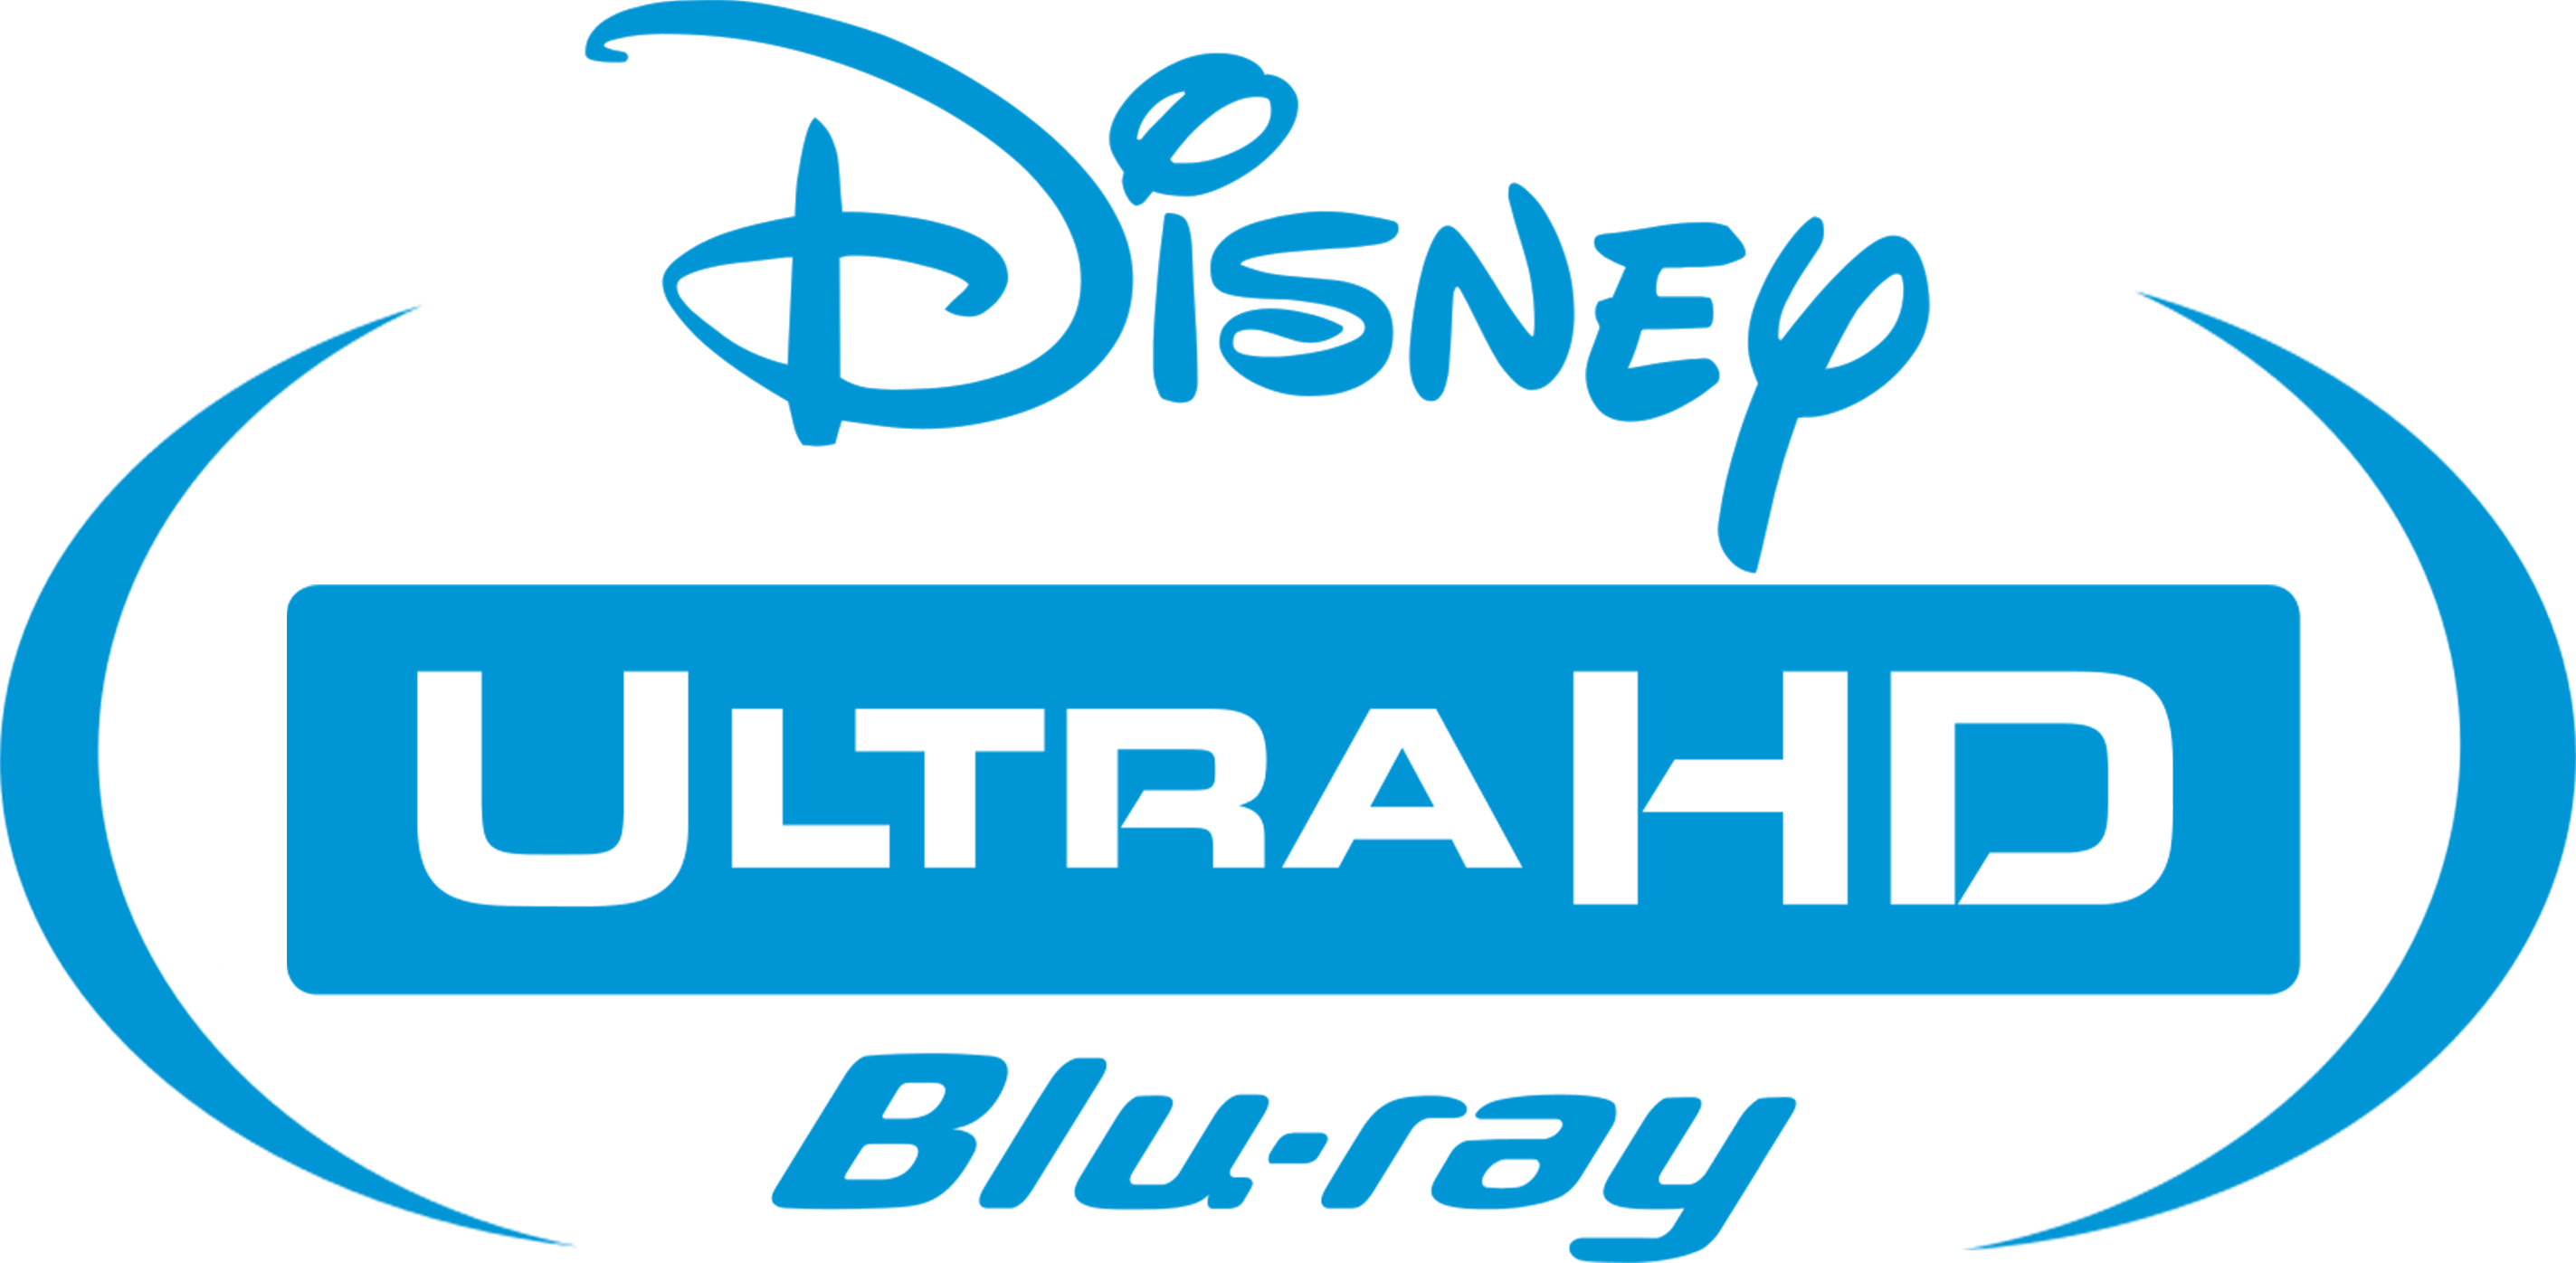 Disney Ultra HD Blu-ray Logo (2017, FAKE) by liamandnico on DeviantArt